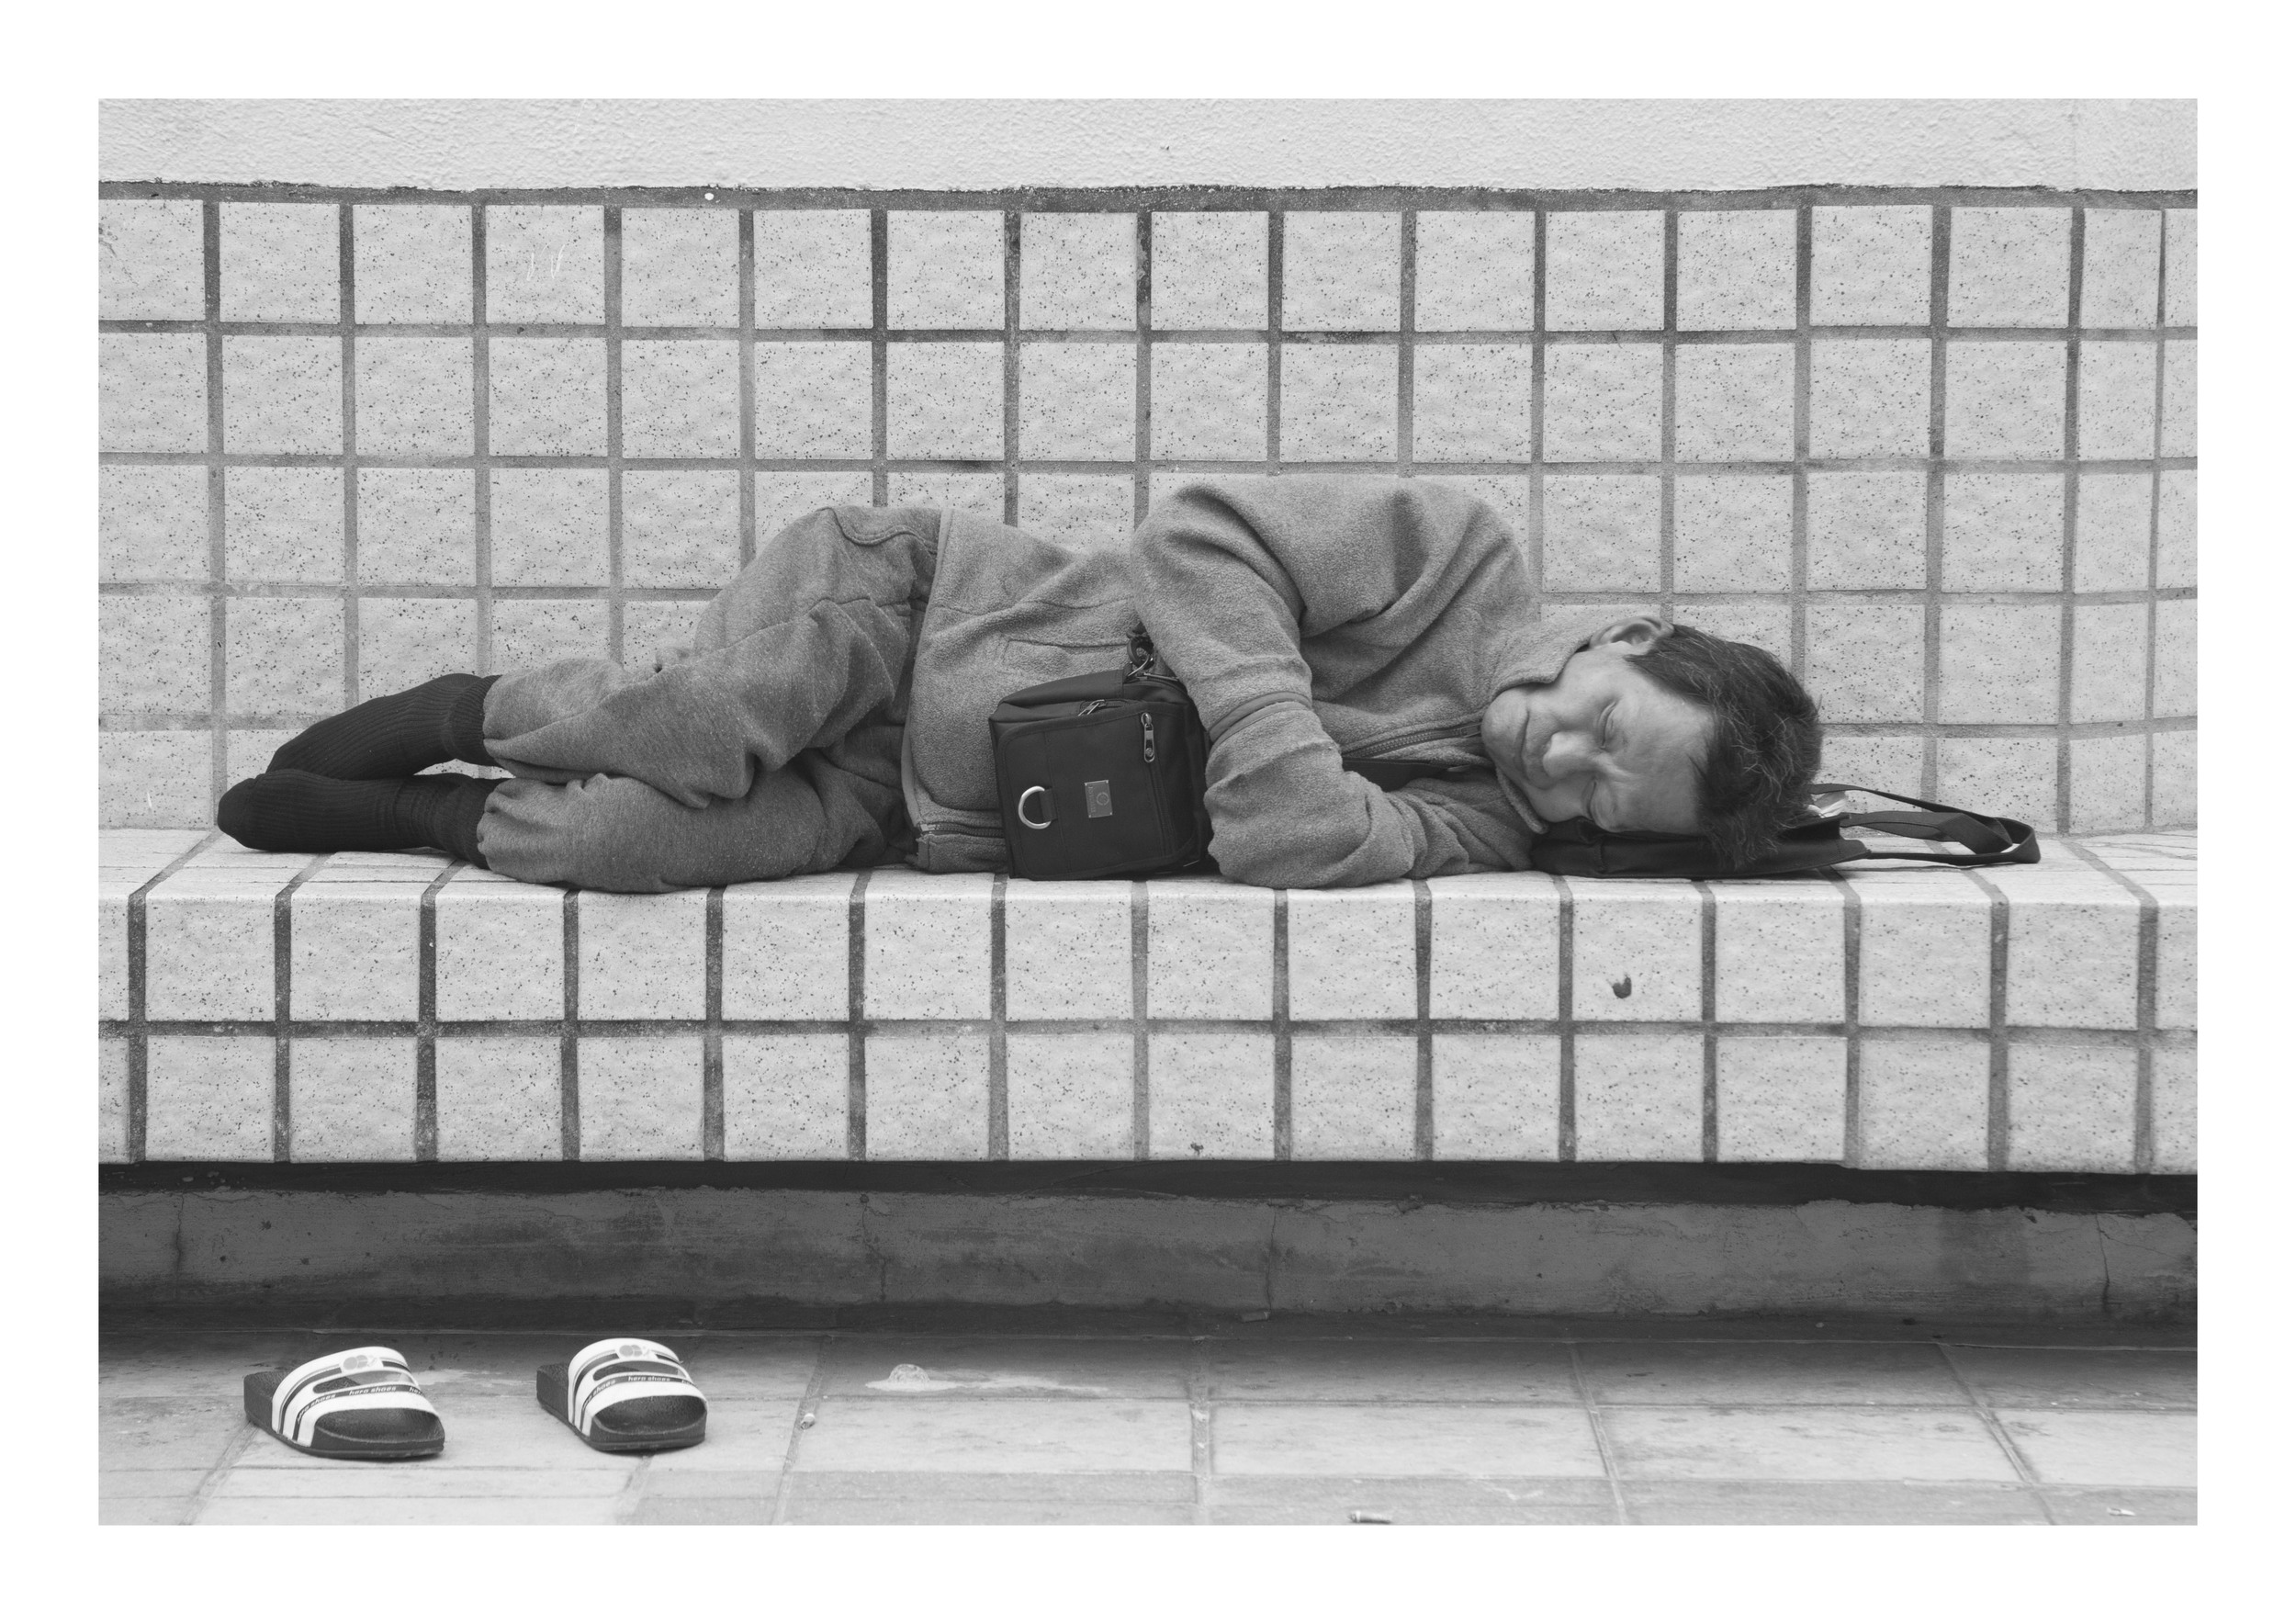 Homeless People In Hong Kong (2013)